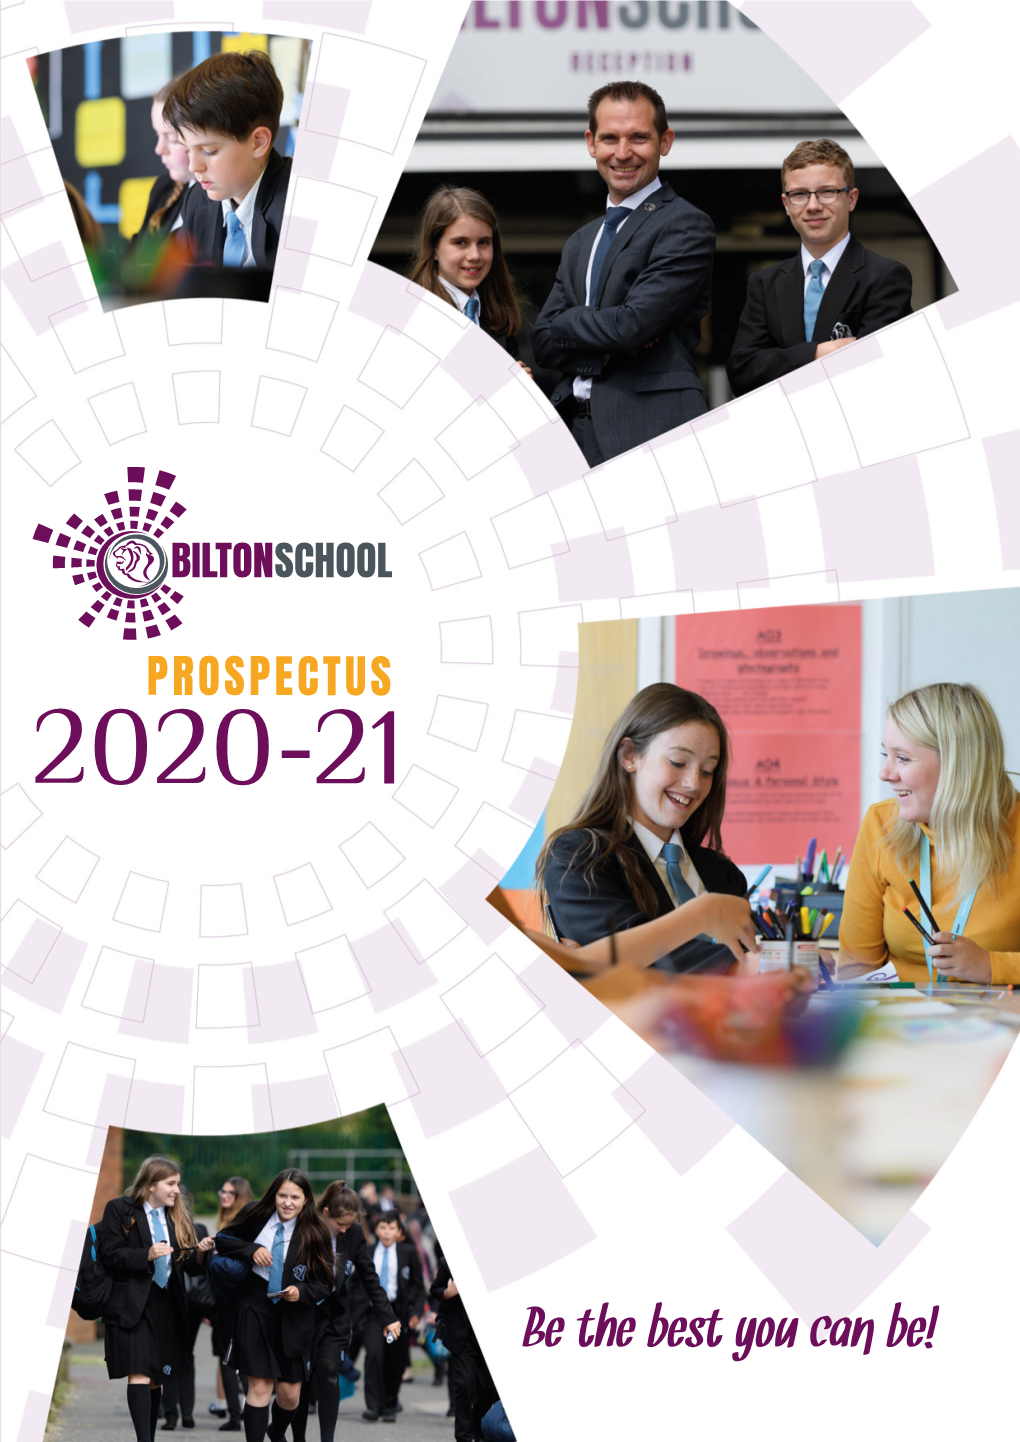 Prospectus 2020-21 Bilton School | Prospectus 2020-21 Bilton School | Prospectus 2020-21